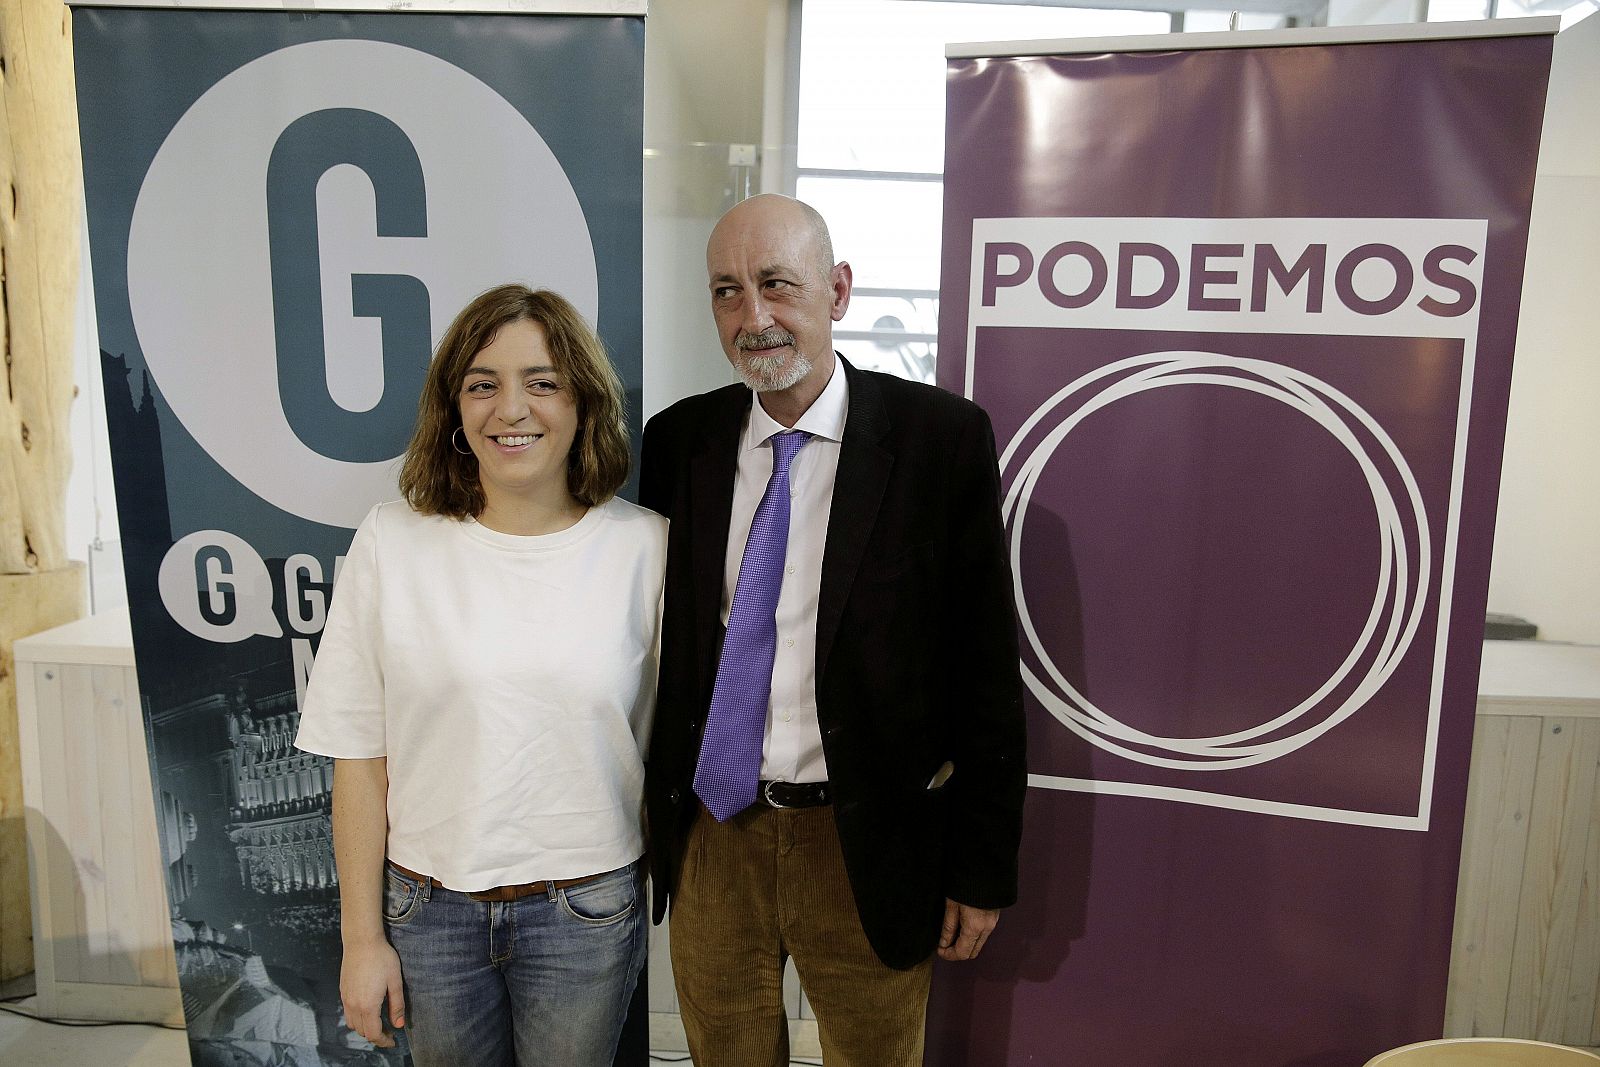 La portavoz de Ganemos Madrid, Celia Meyer, y el secretario local de Podemos, Jesús Montero, en la presentación de su acuerdo.